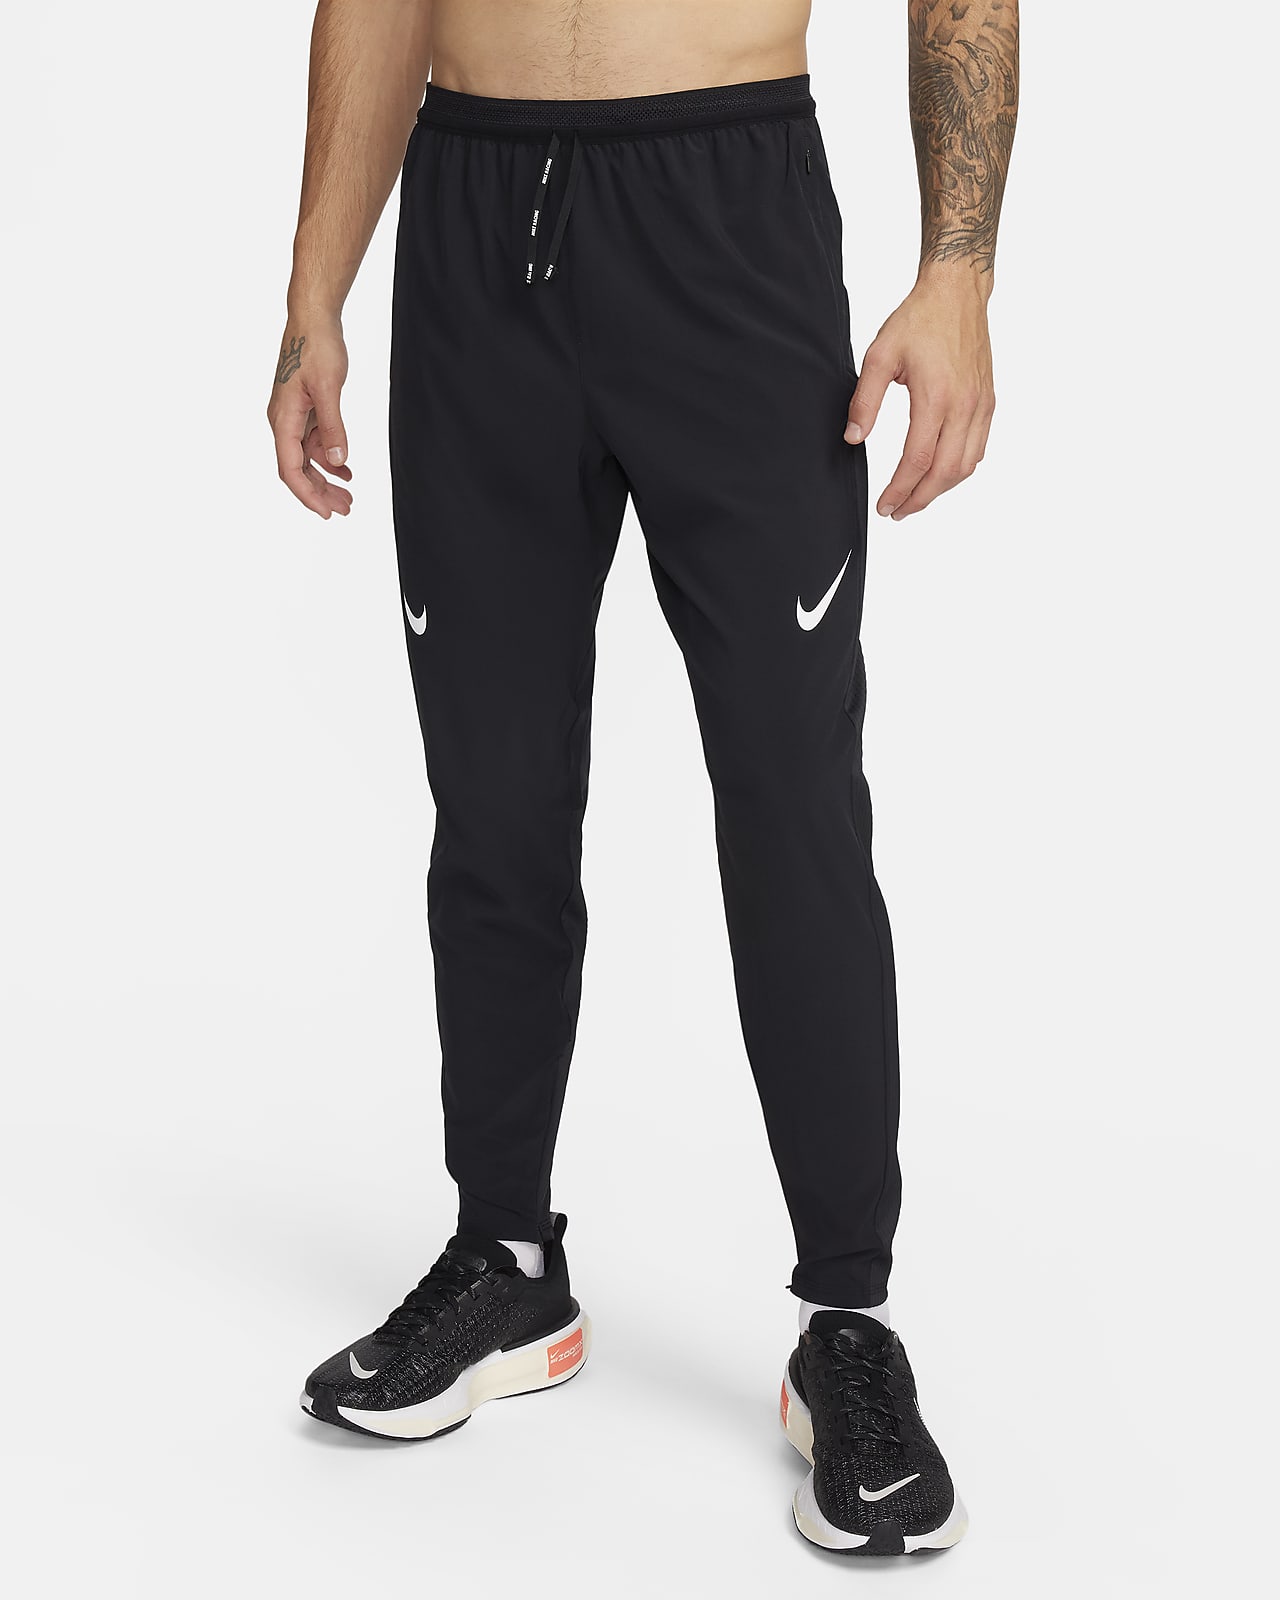 Pantalon de running Dri-FIT ADV Nike AeroSwift pour homme